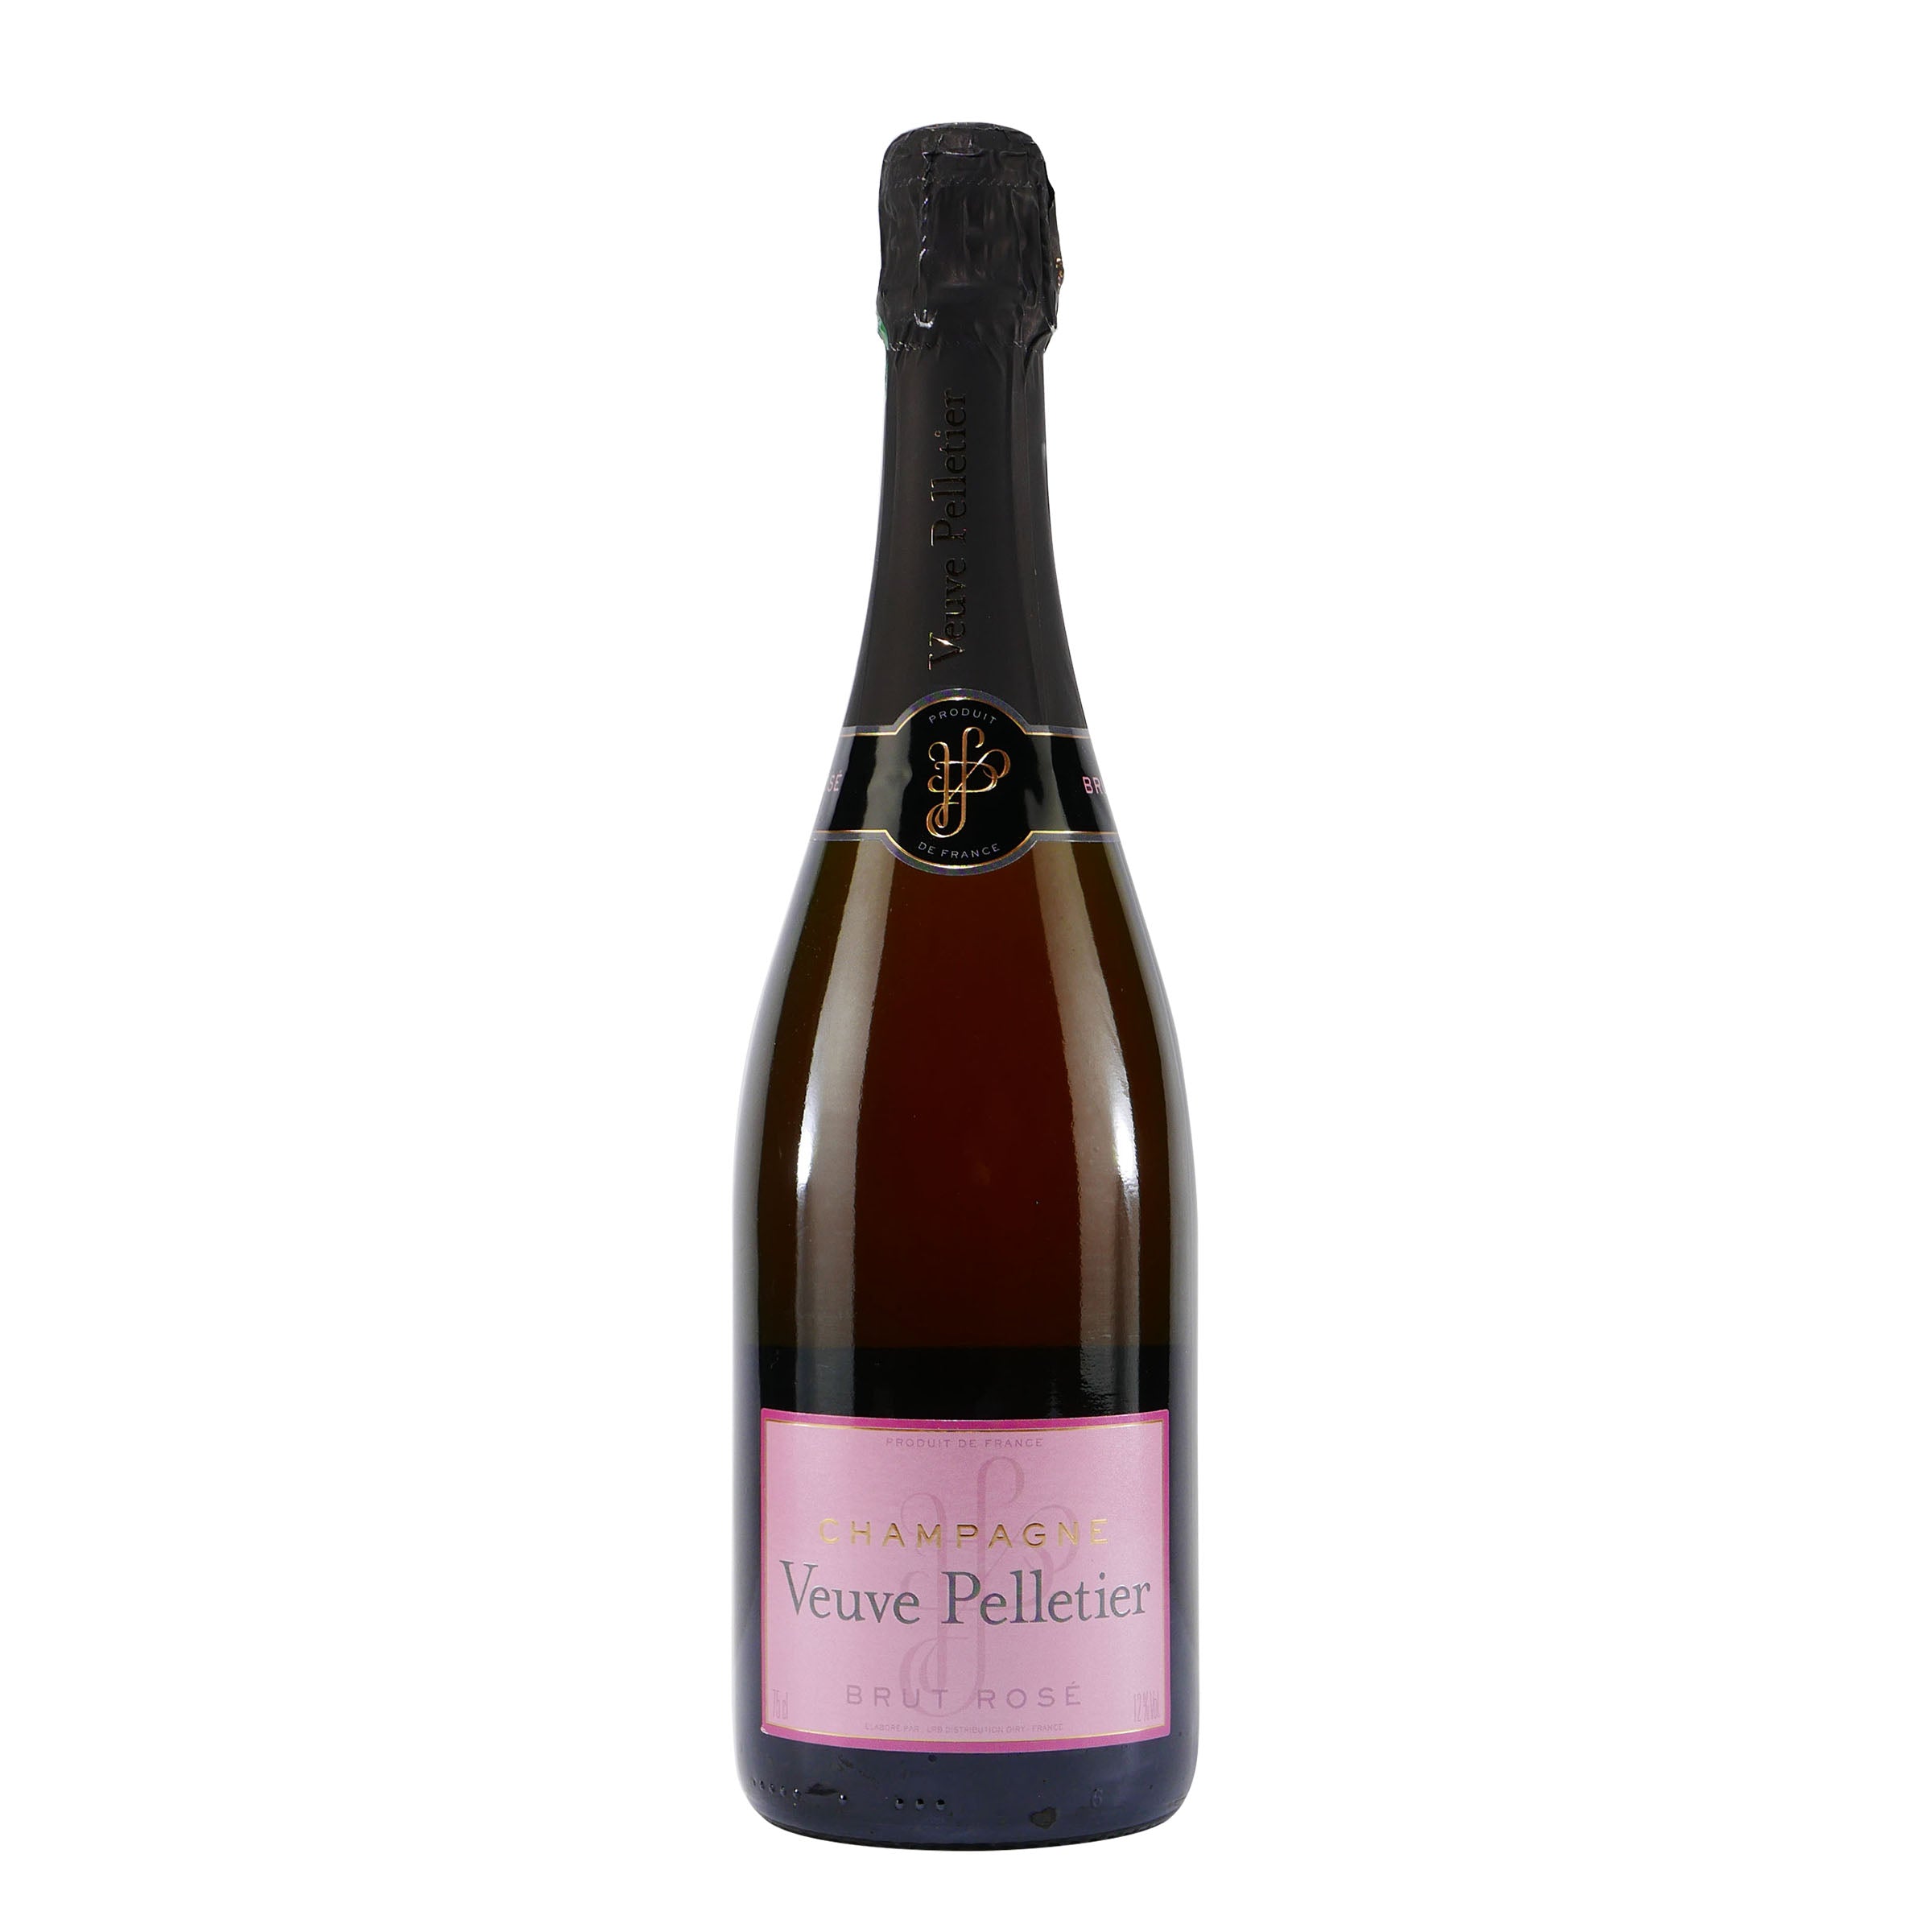 Veuve Pelletier Champagne Brut Rosé